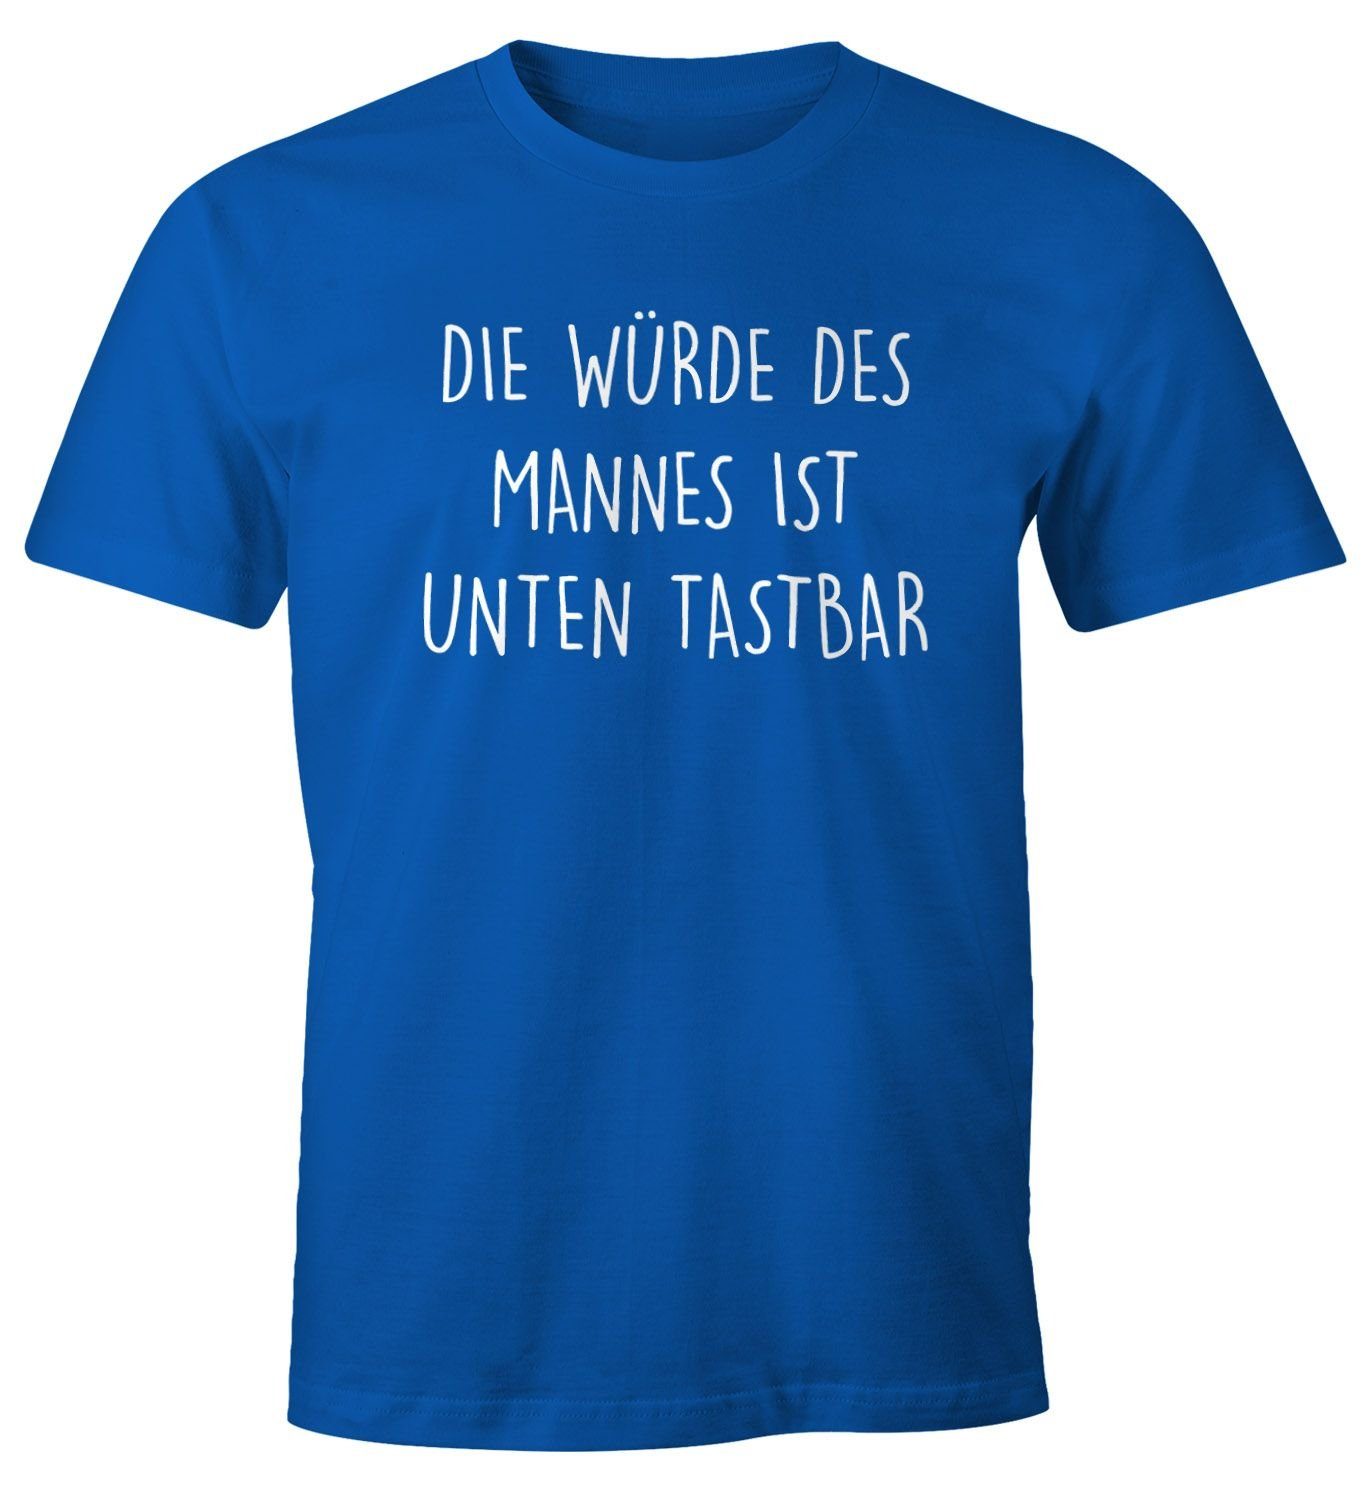 tastbar Herren Moonworks® blau Spruch Lustiges Die Mannes Print T-Shirt mit Würde mit Print-Shirt ist Fun-Shirt MoonWorks unten des